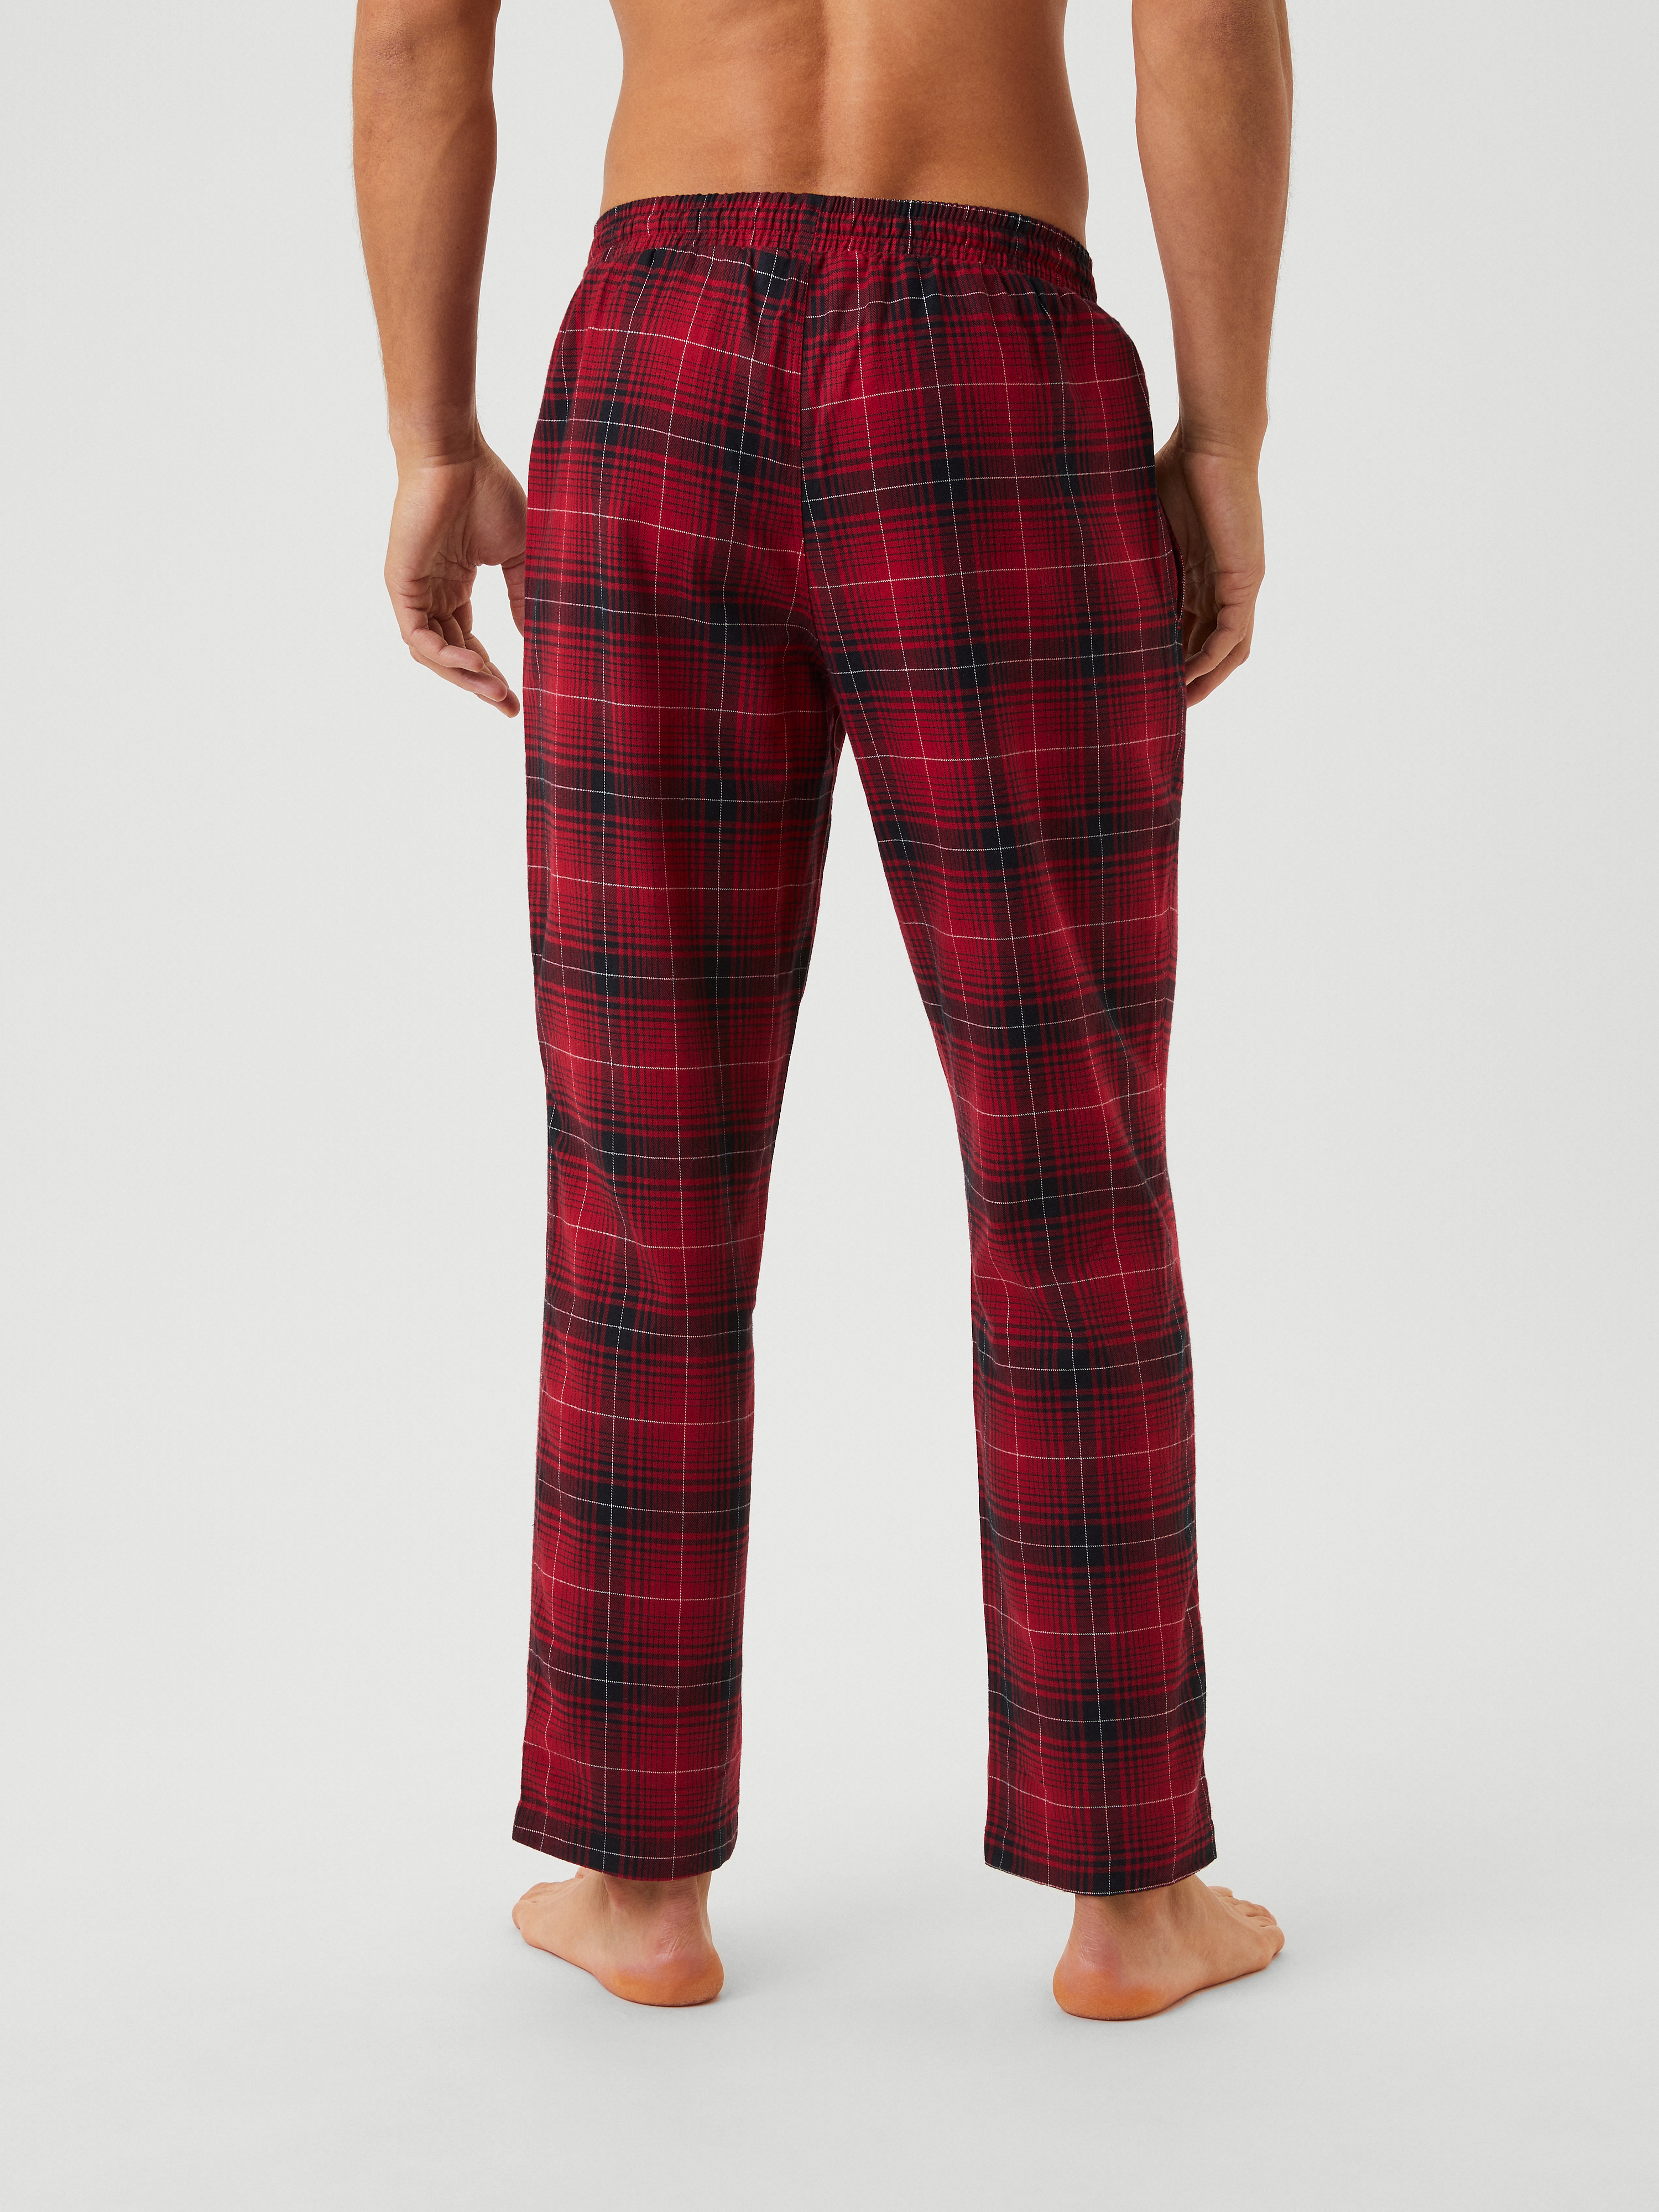 Flannelette Pyjama Pant  Target Australia